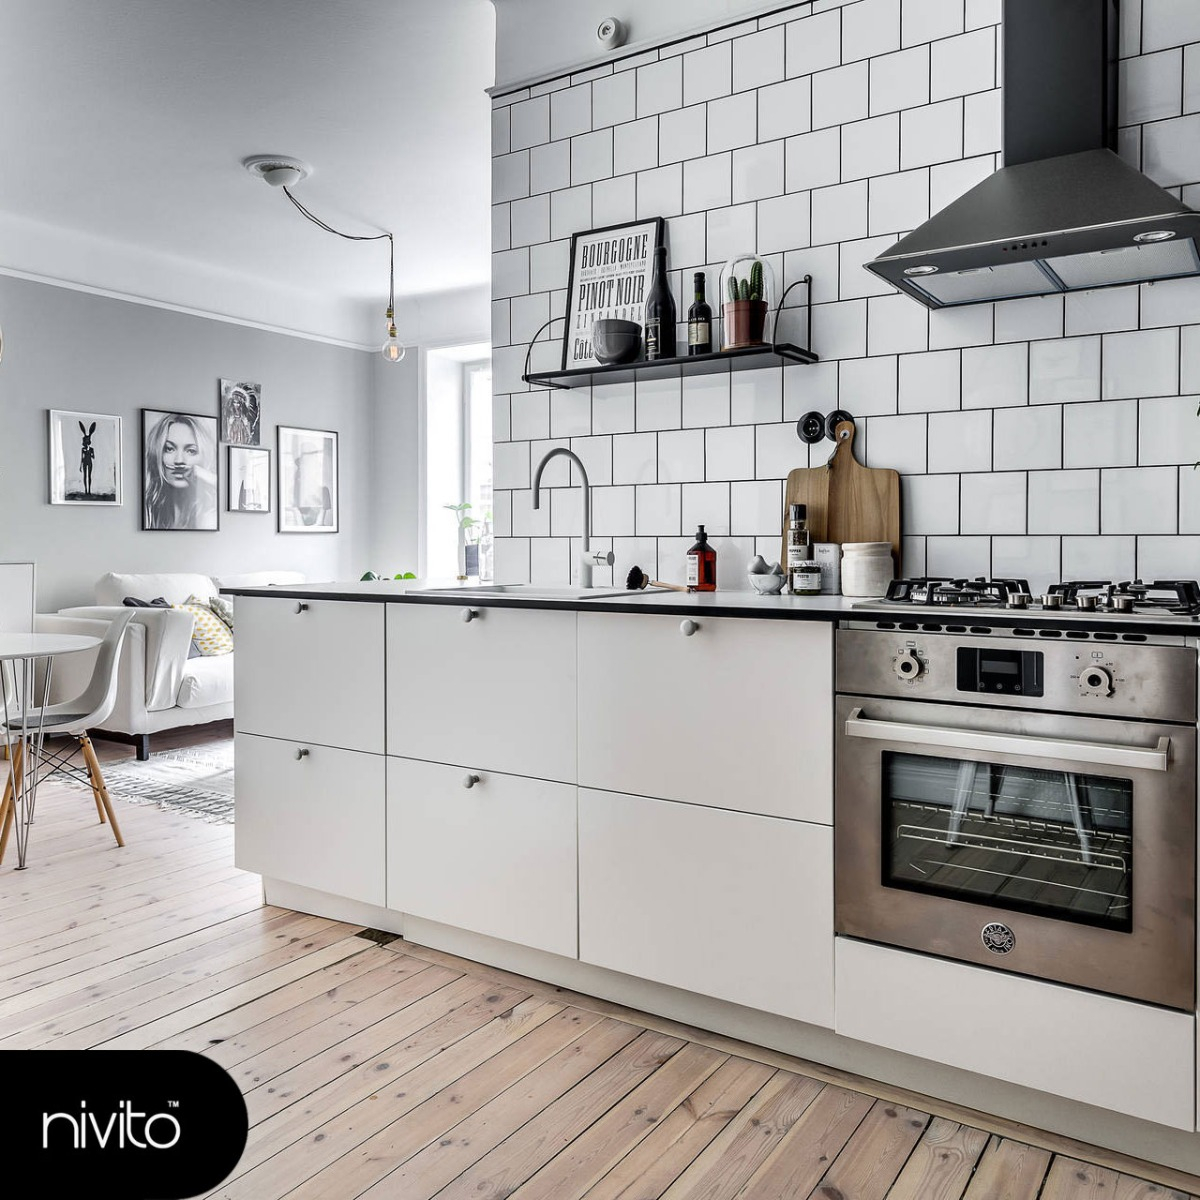 White Kitchen Mixer Tap - Nivito RH-130